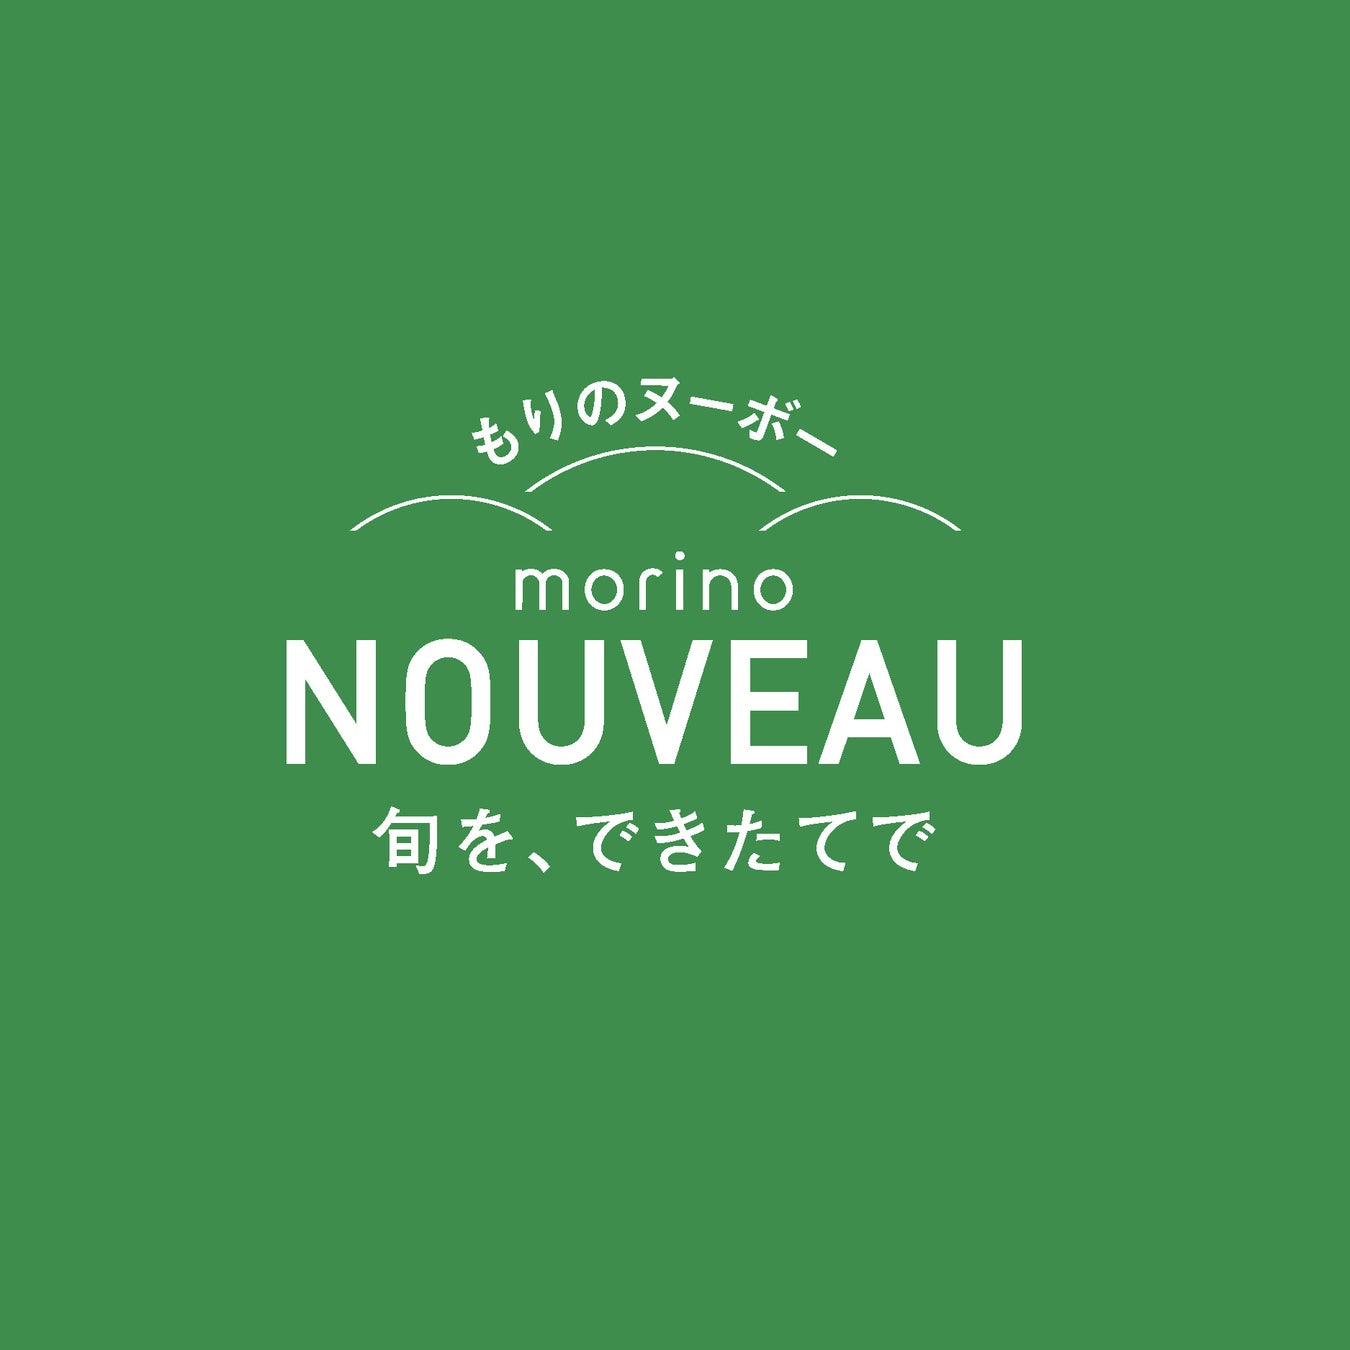 もりもとの新ブランド第2弾「morino Nouveau(もりのヌーボー)」が初登場。2023年秋に収穫する新小豆を使用した特別などら焼きを実演販売。